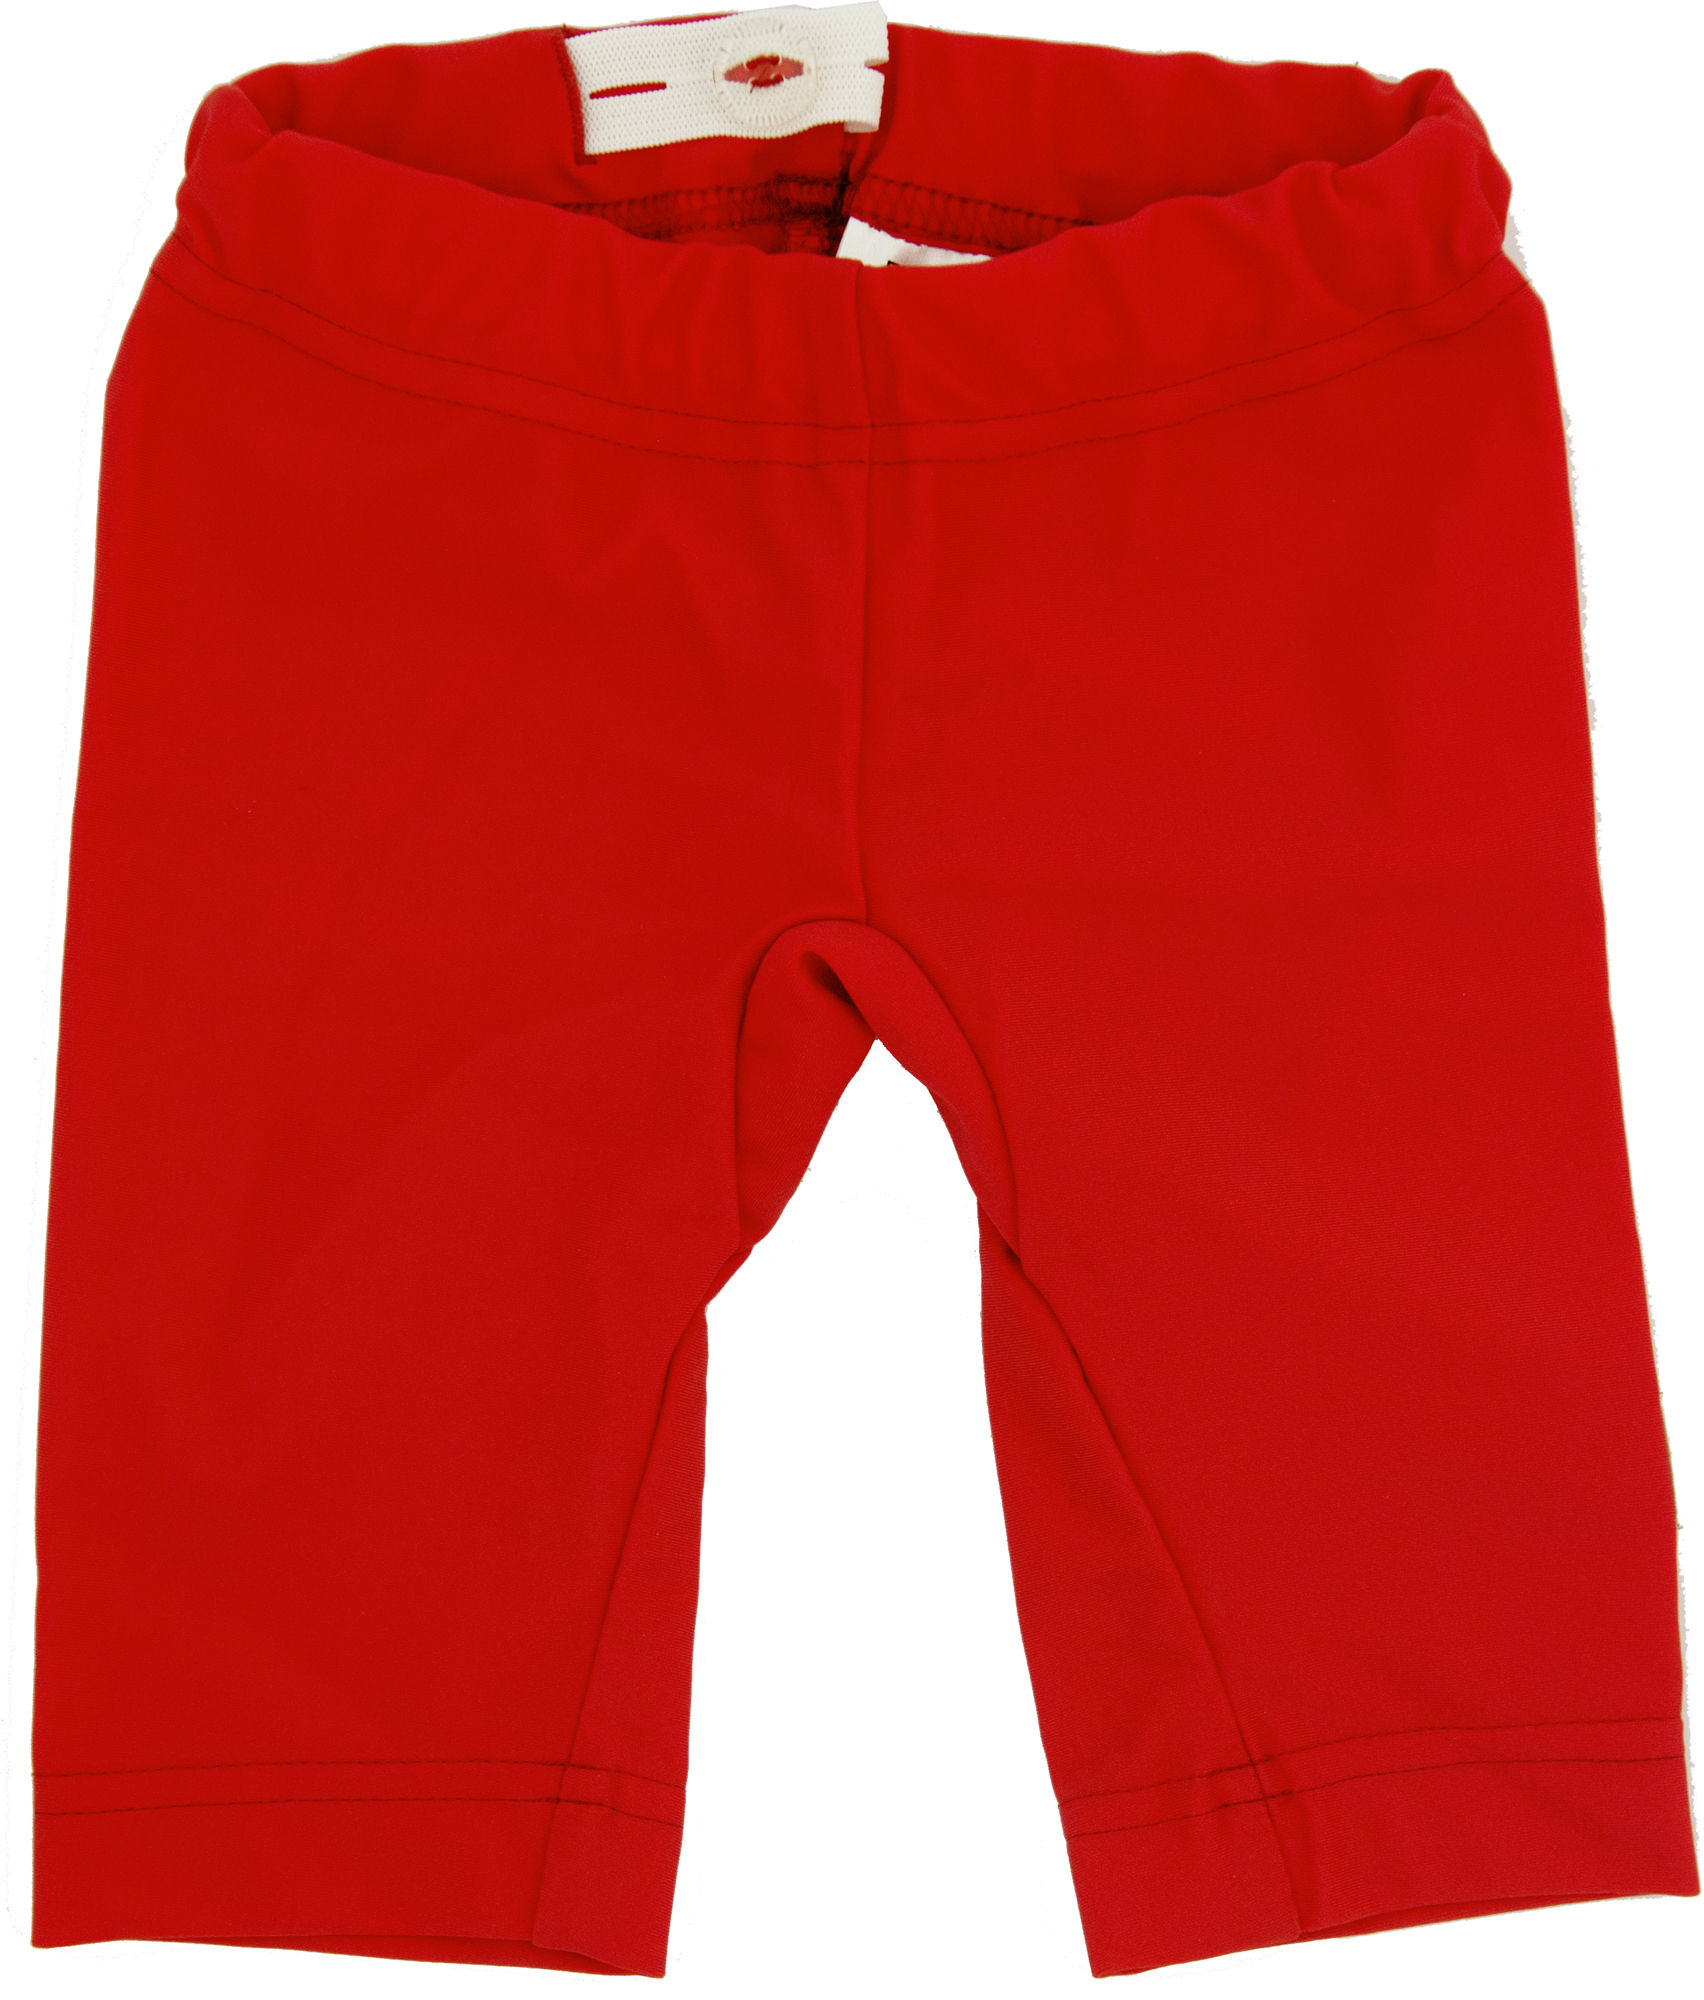 ImseVimse UV-Shorts Red 74-80